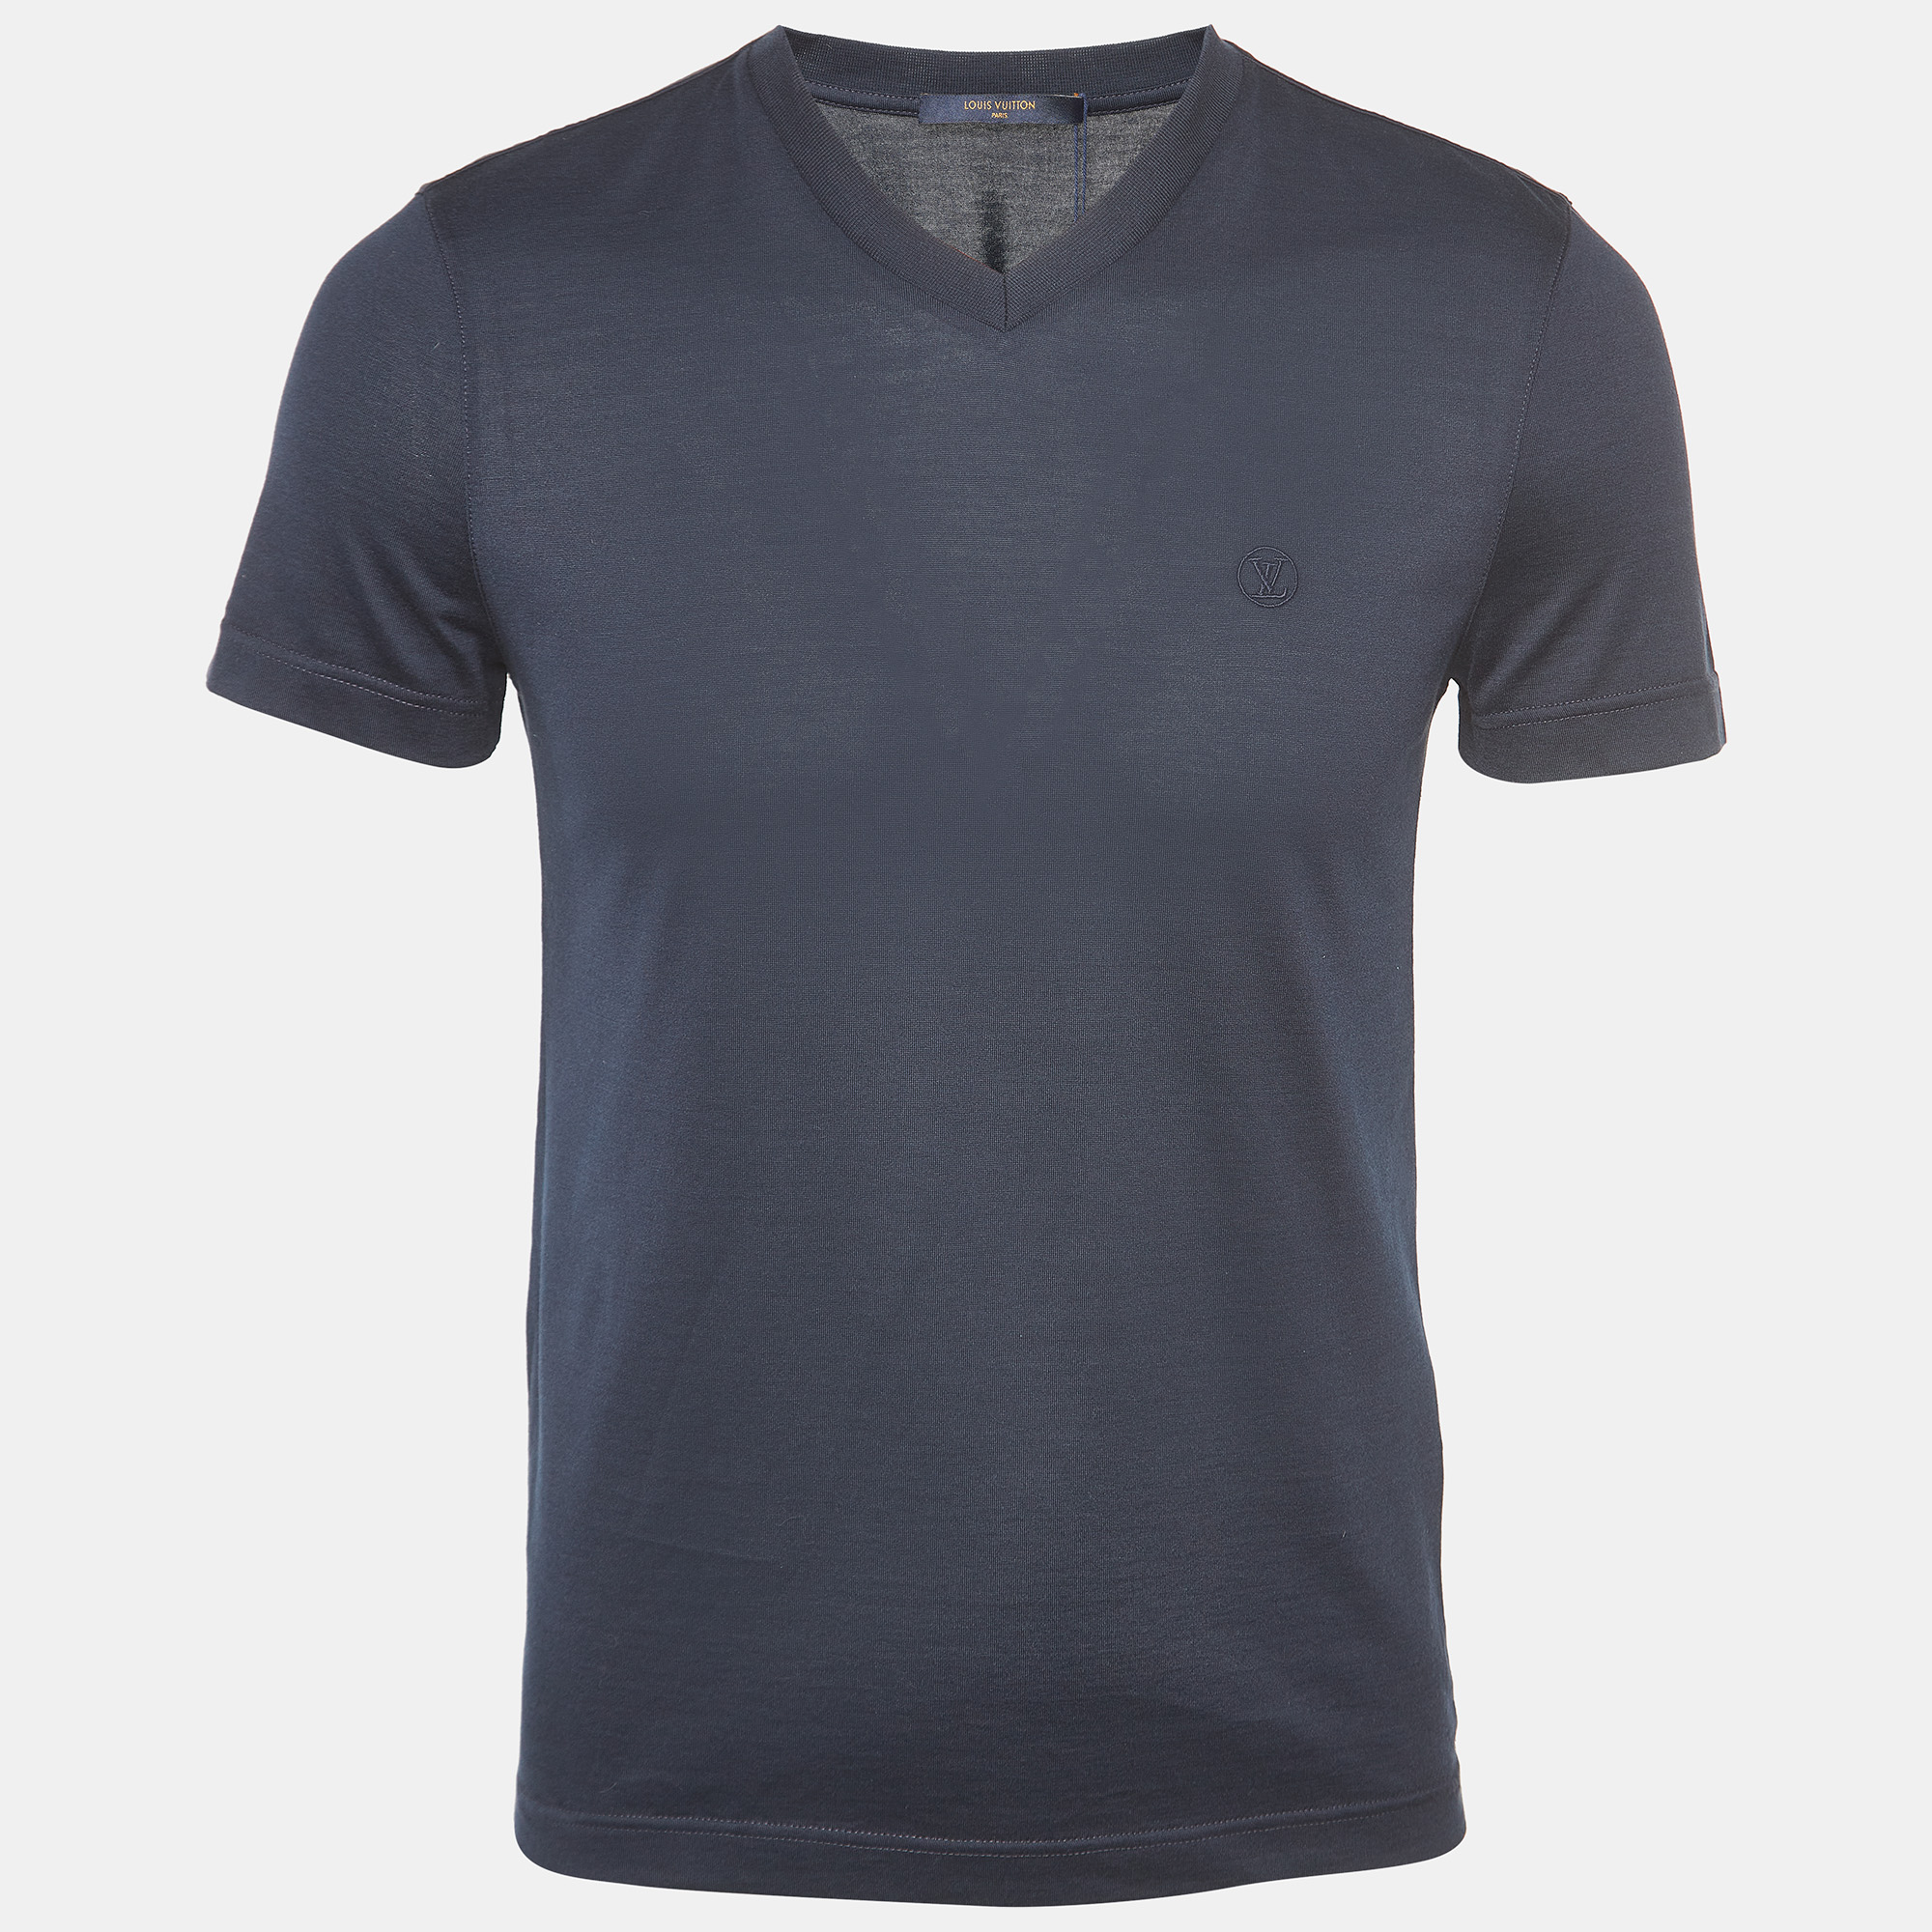 Louis vuitton navy blue cotton v-neck t-shirt xs